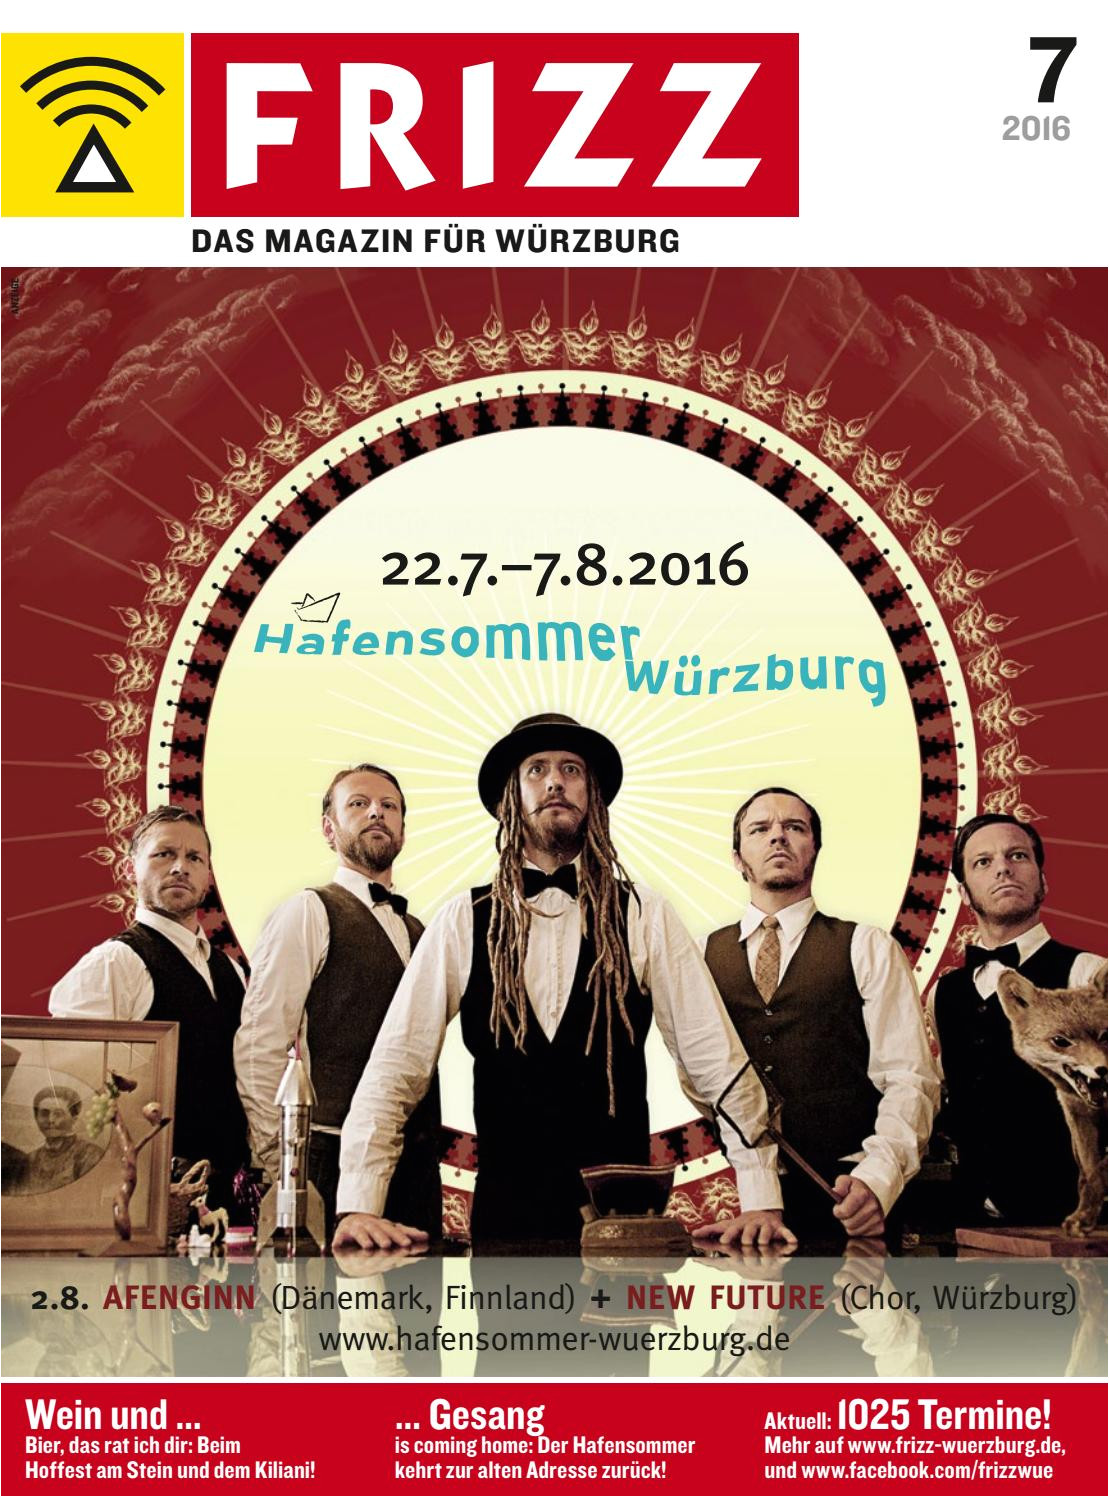 frizz das magazin fur wurzburg juli 2016 by frizz das magazin wurzburg issuu